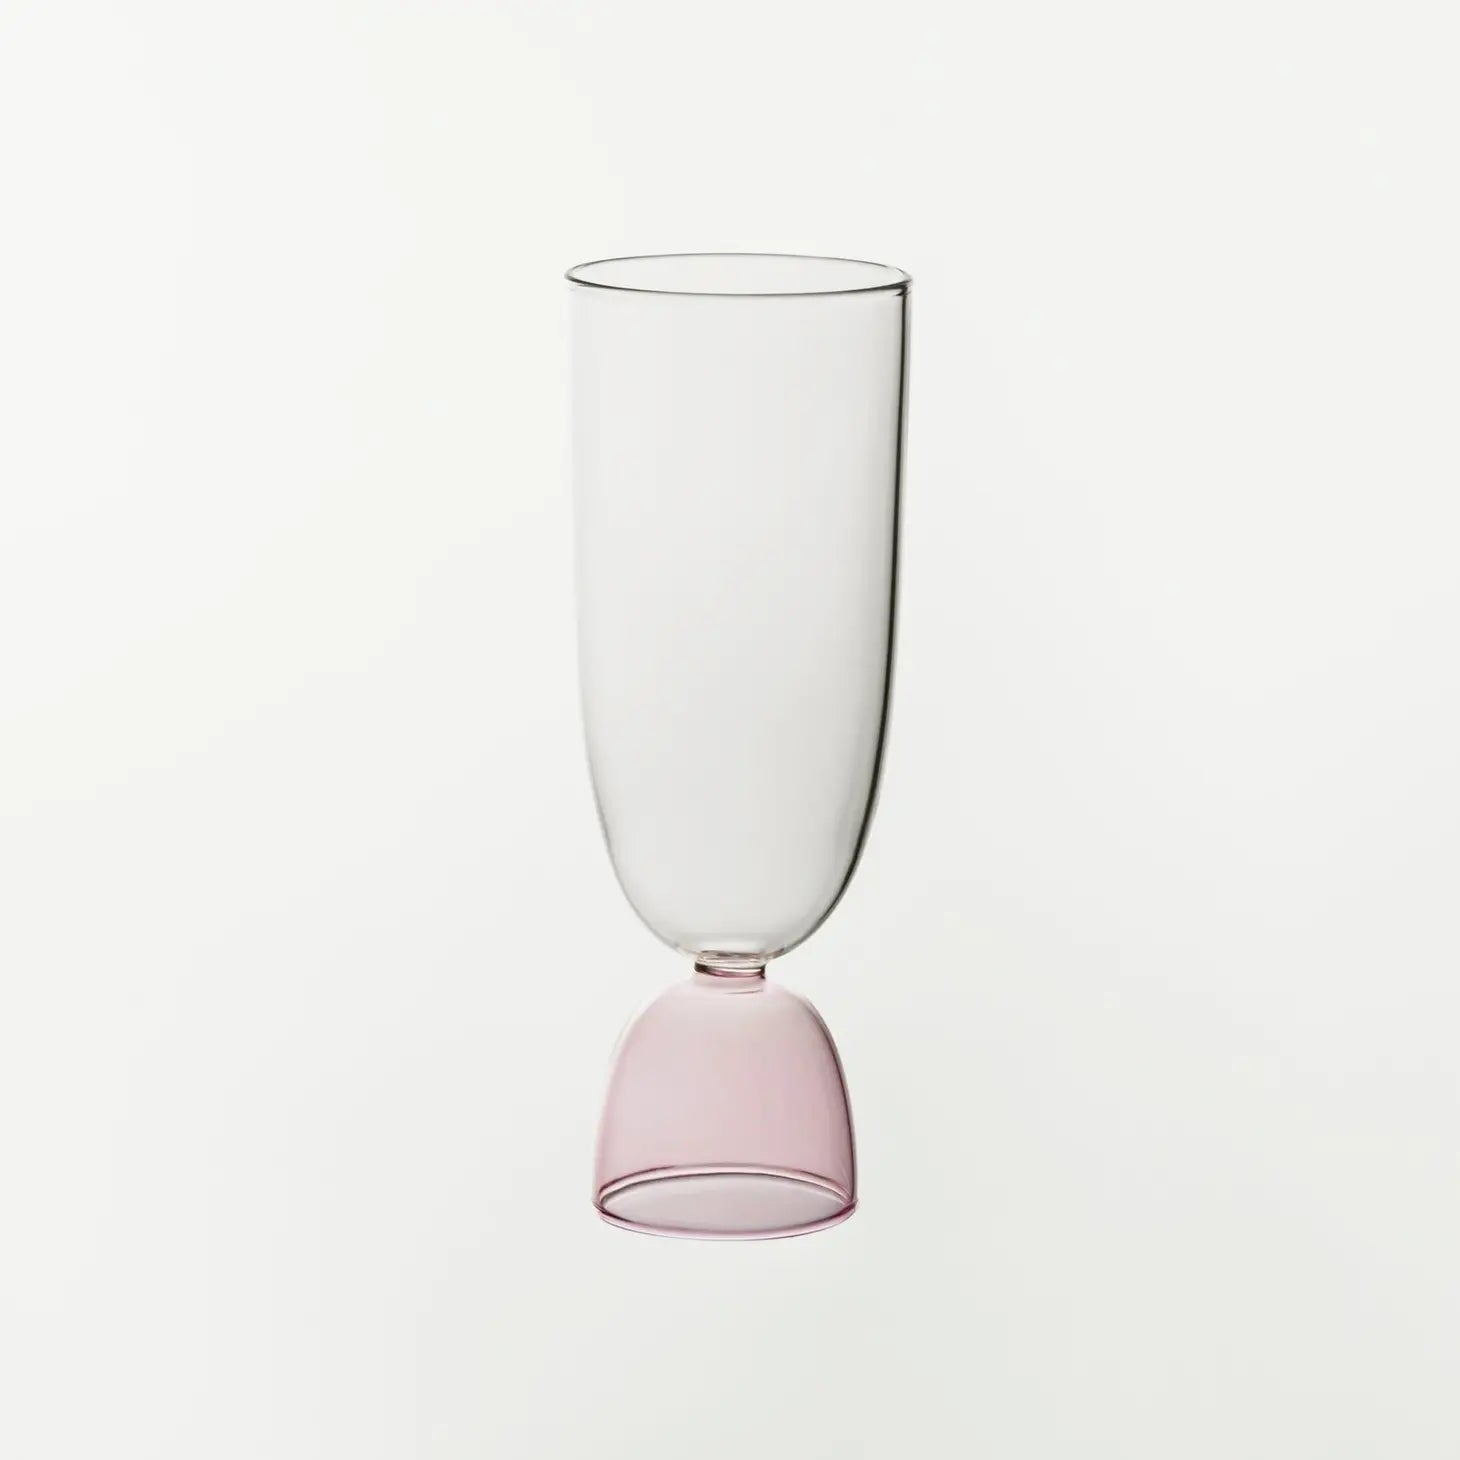 Mamo | Mamo Hi-Ball glass | Prelude and Dawn | Los Angeles, CA